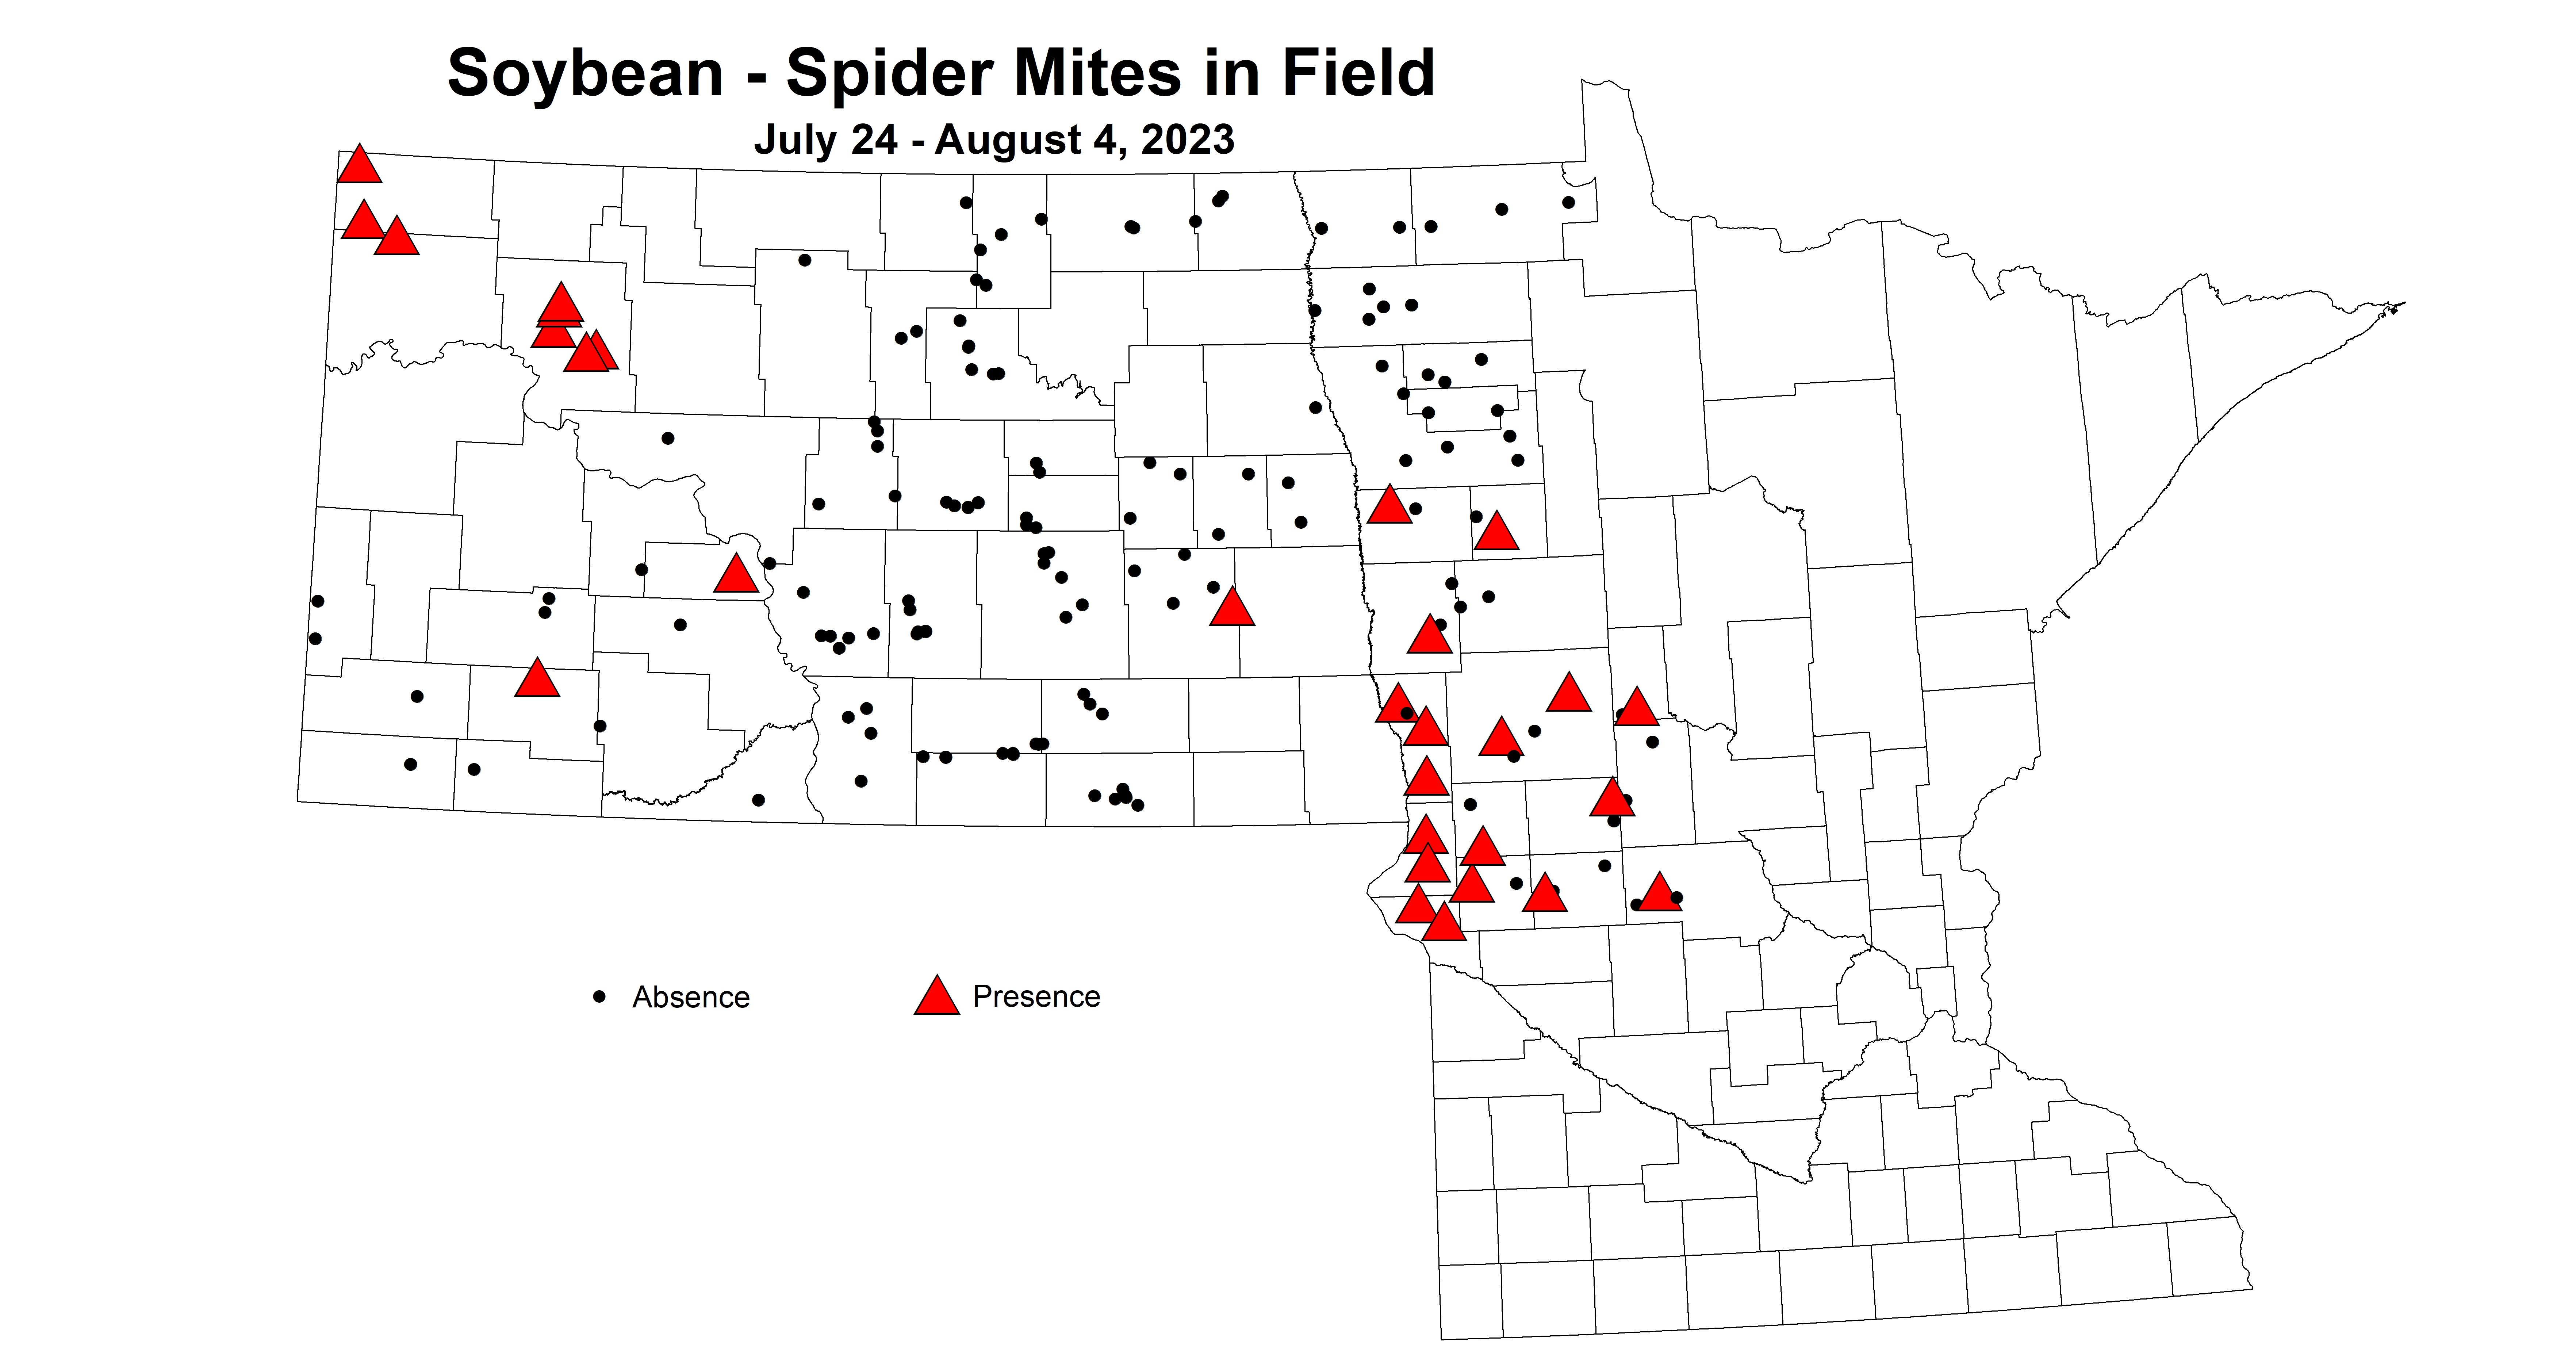 soybean spider mites in field 7.24-8.4 2023